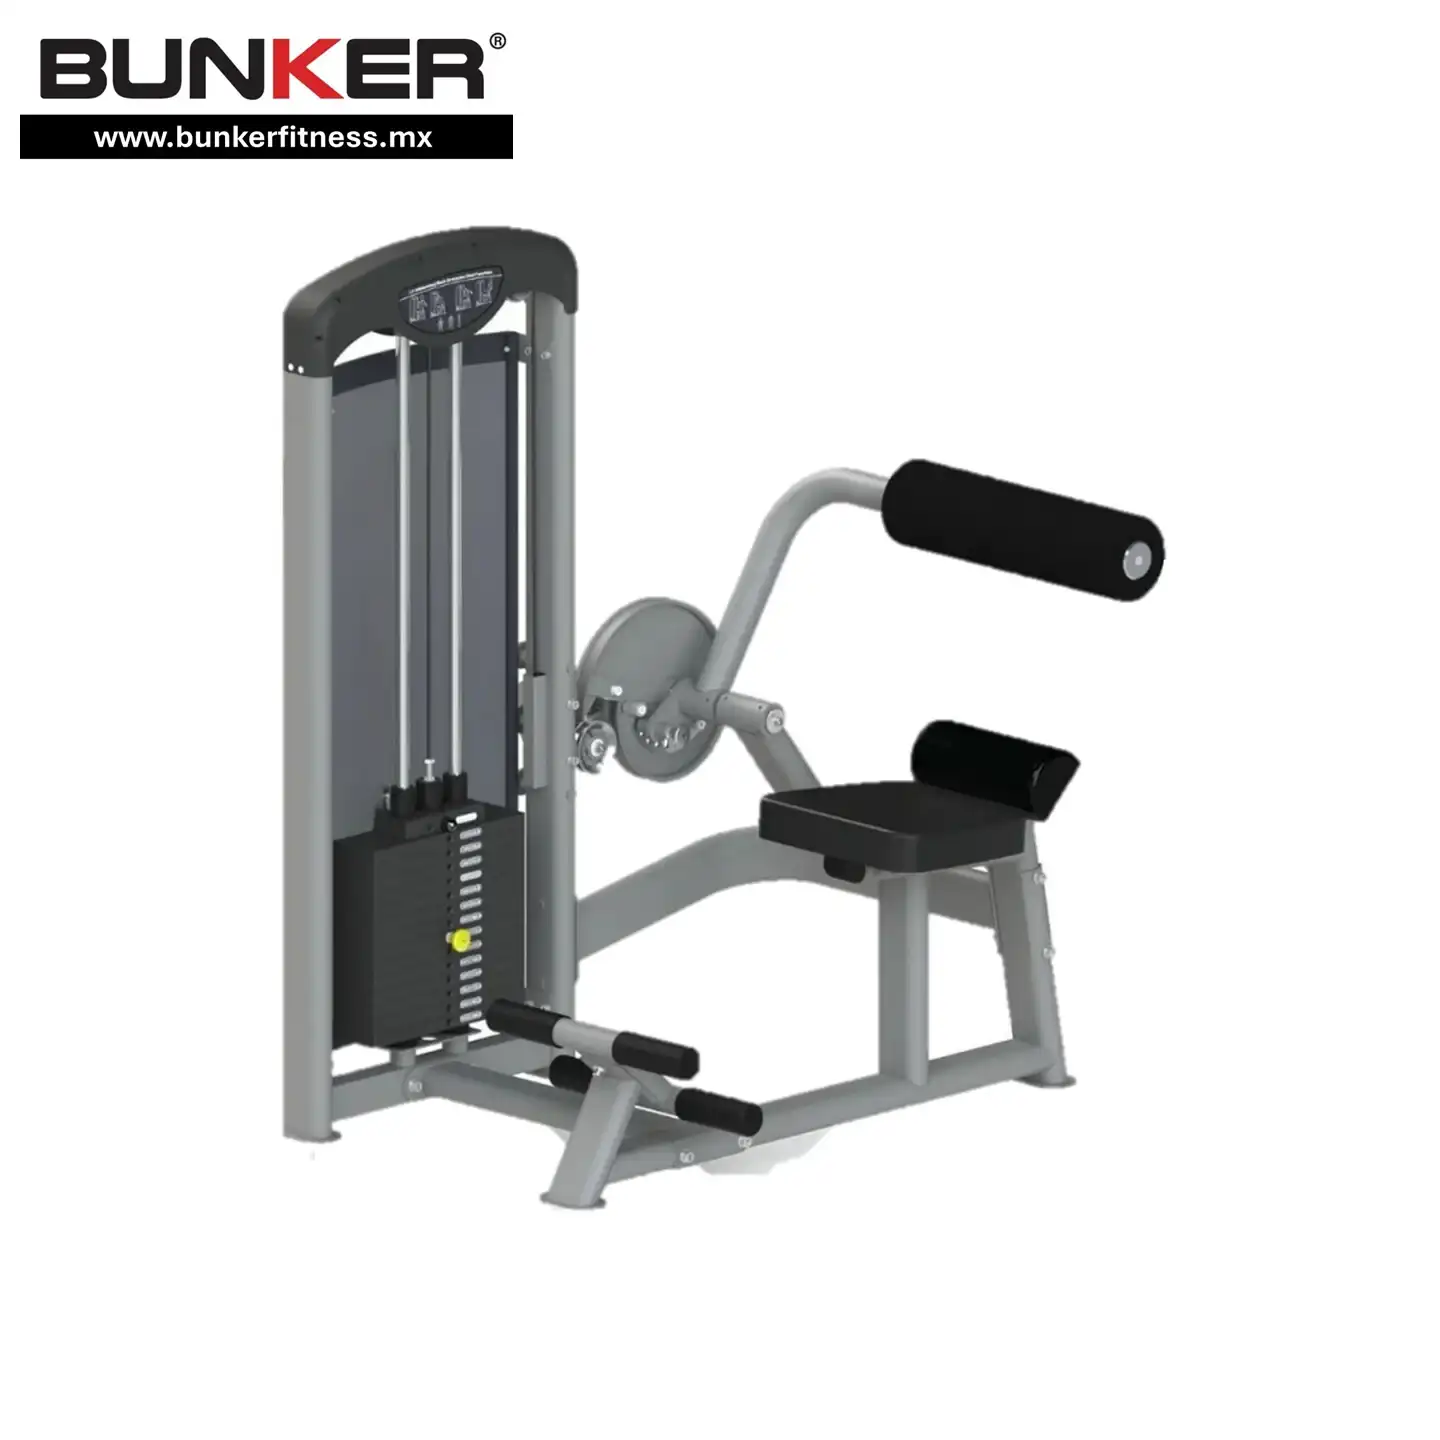 extensión abdominal  para ejercicio y gimnasio en casa bunker gym bunker fitness